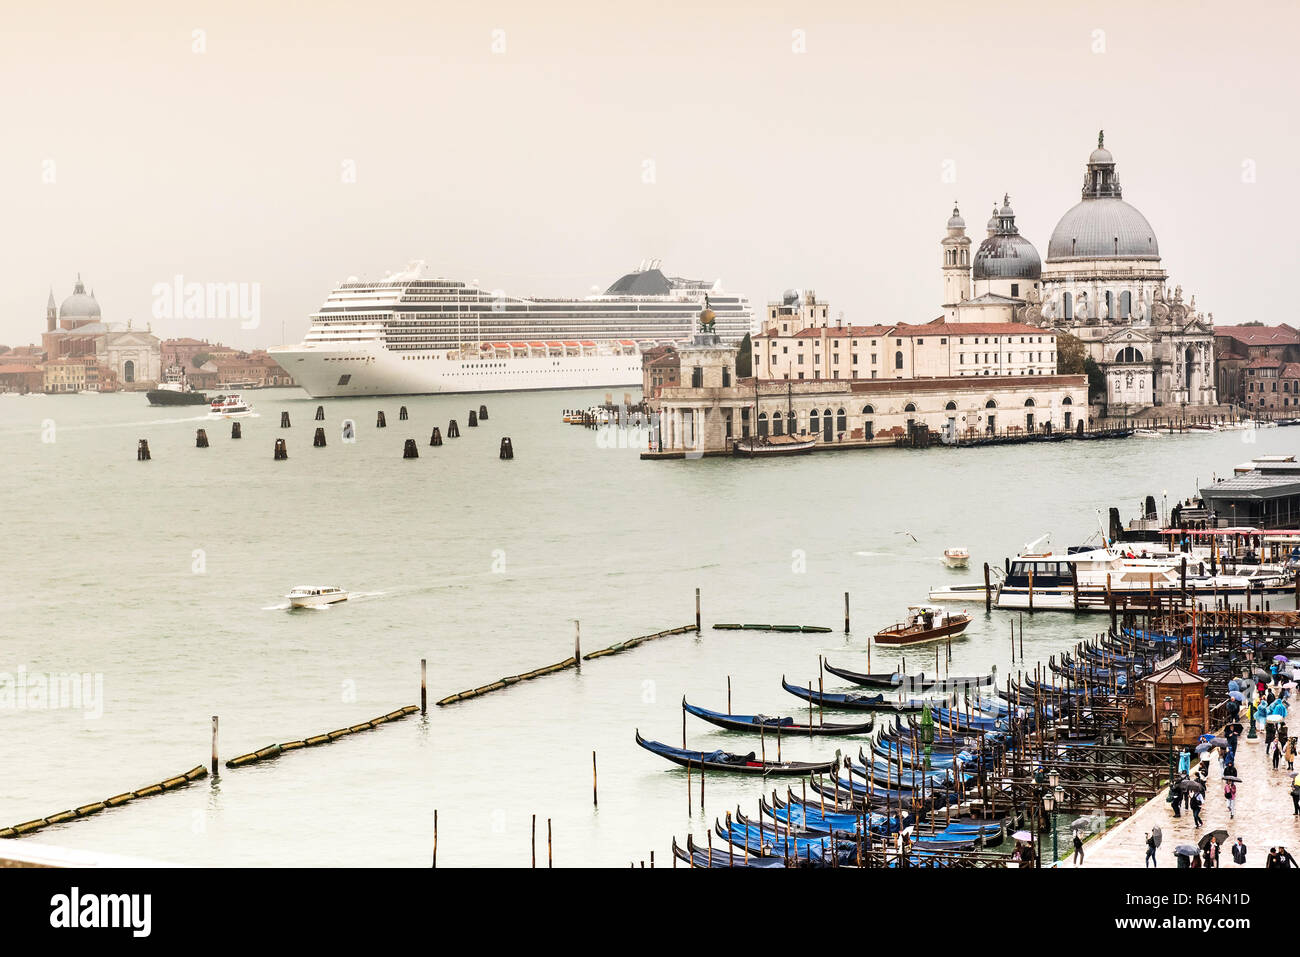 Big White de croisière de venir à Venise, Italie. Contrairement à l'échelle montrant l'architecture locale et les petits bateaux en premier plan. Journée nuageuse avec ciel gris Banque D'Images